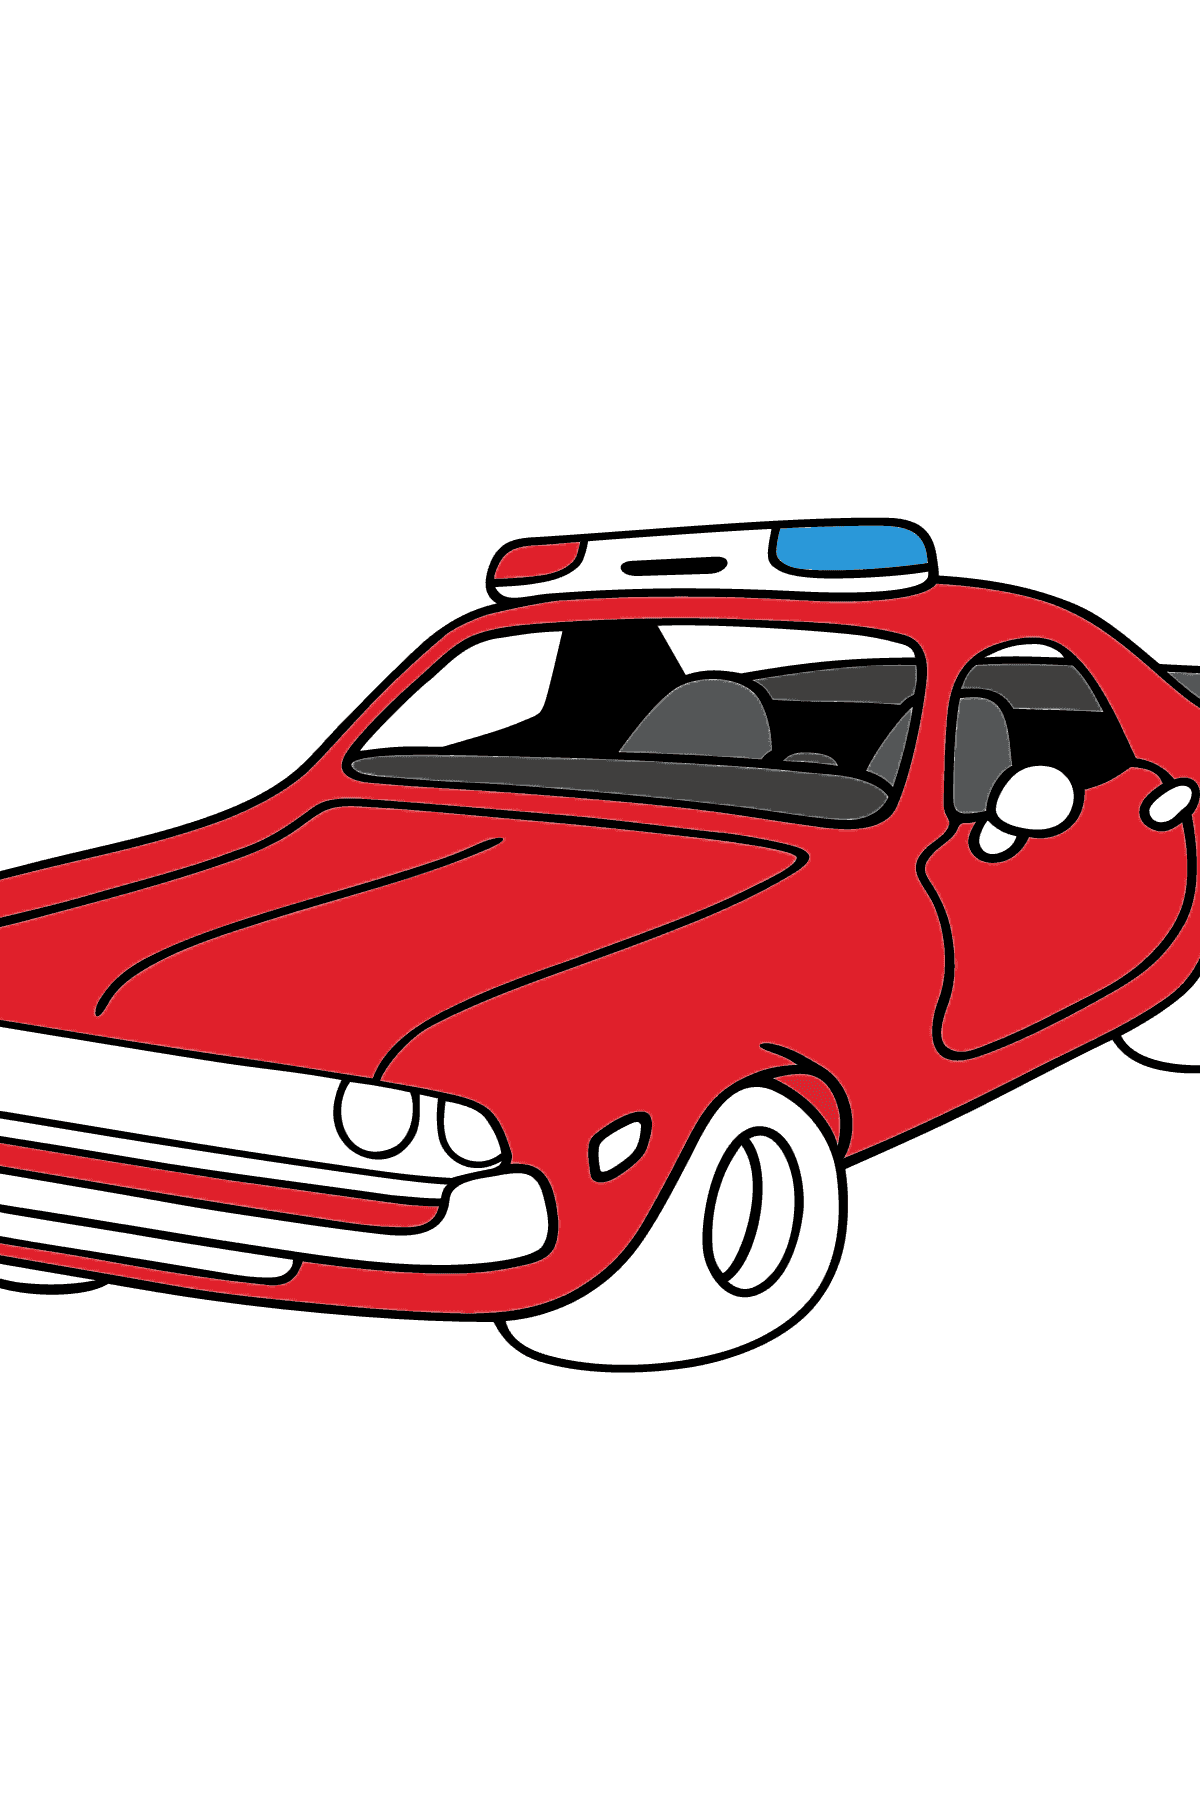 Kolorowanka - Czerwony samochód policyjny - Kolorowanki dla dzieci